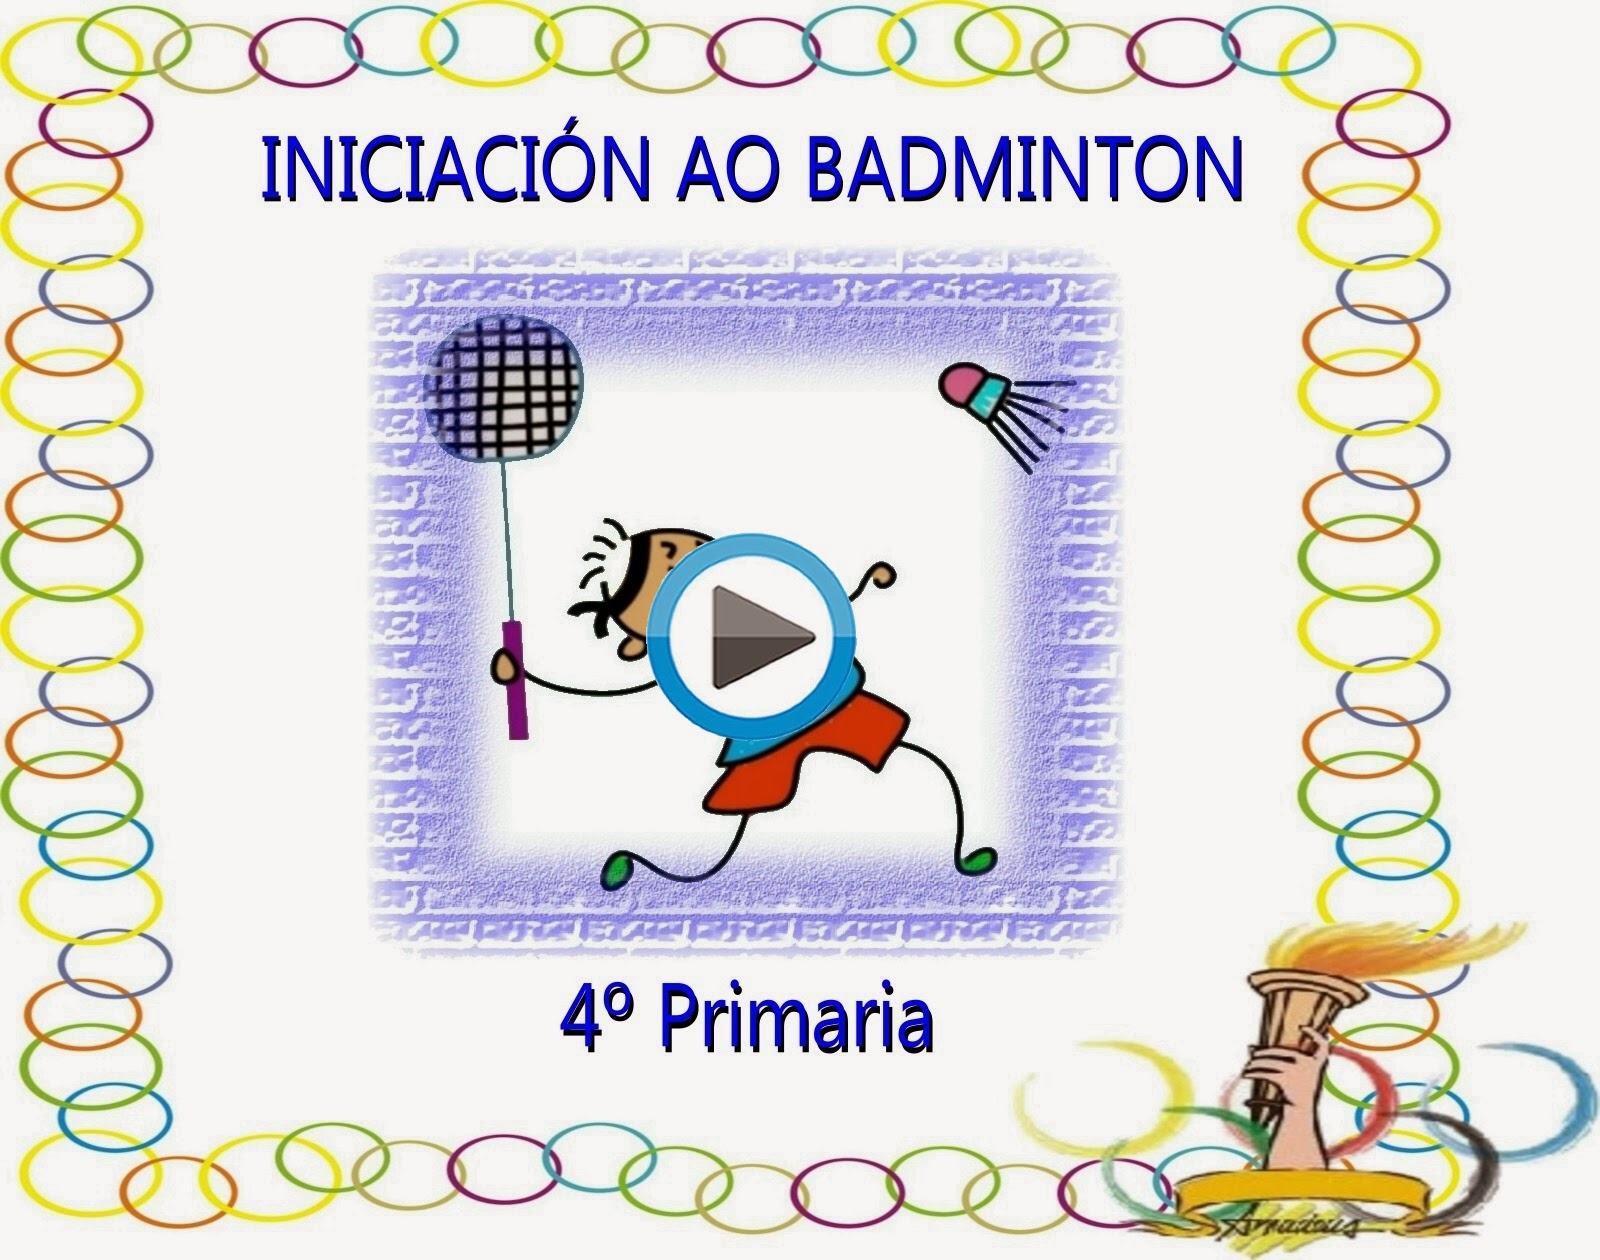 Iniciación ao Badminton (4ºPrimaria)